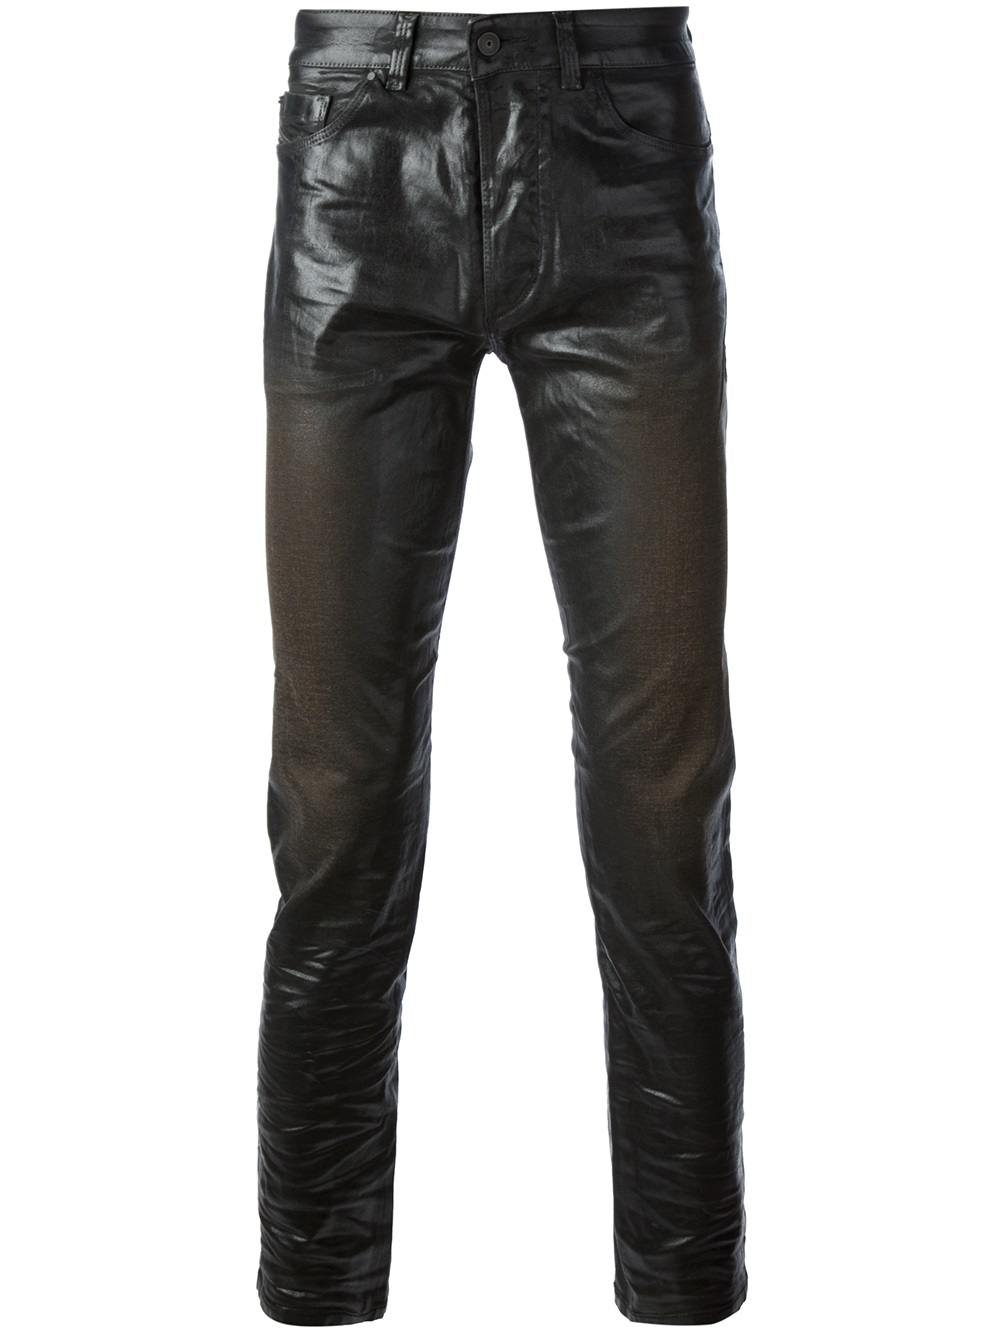 Lyst - Diesel Black Gold Superbianp Trouser in Black for Men